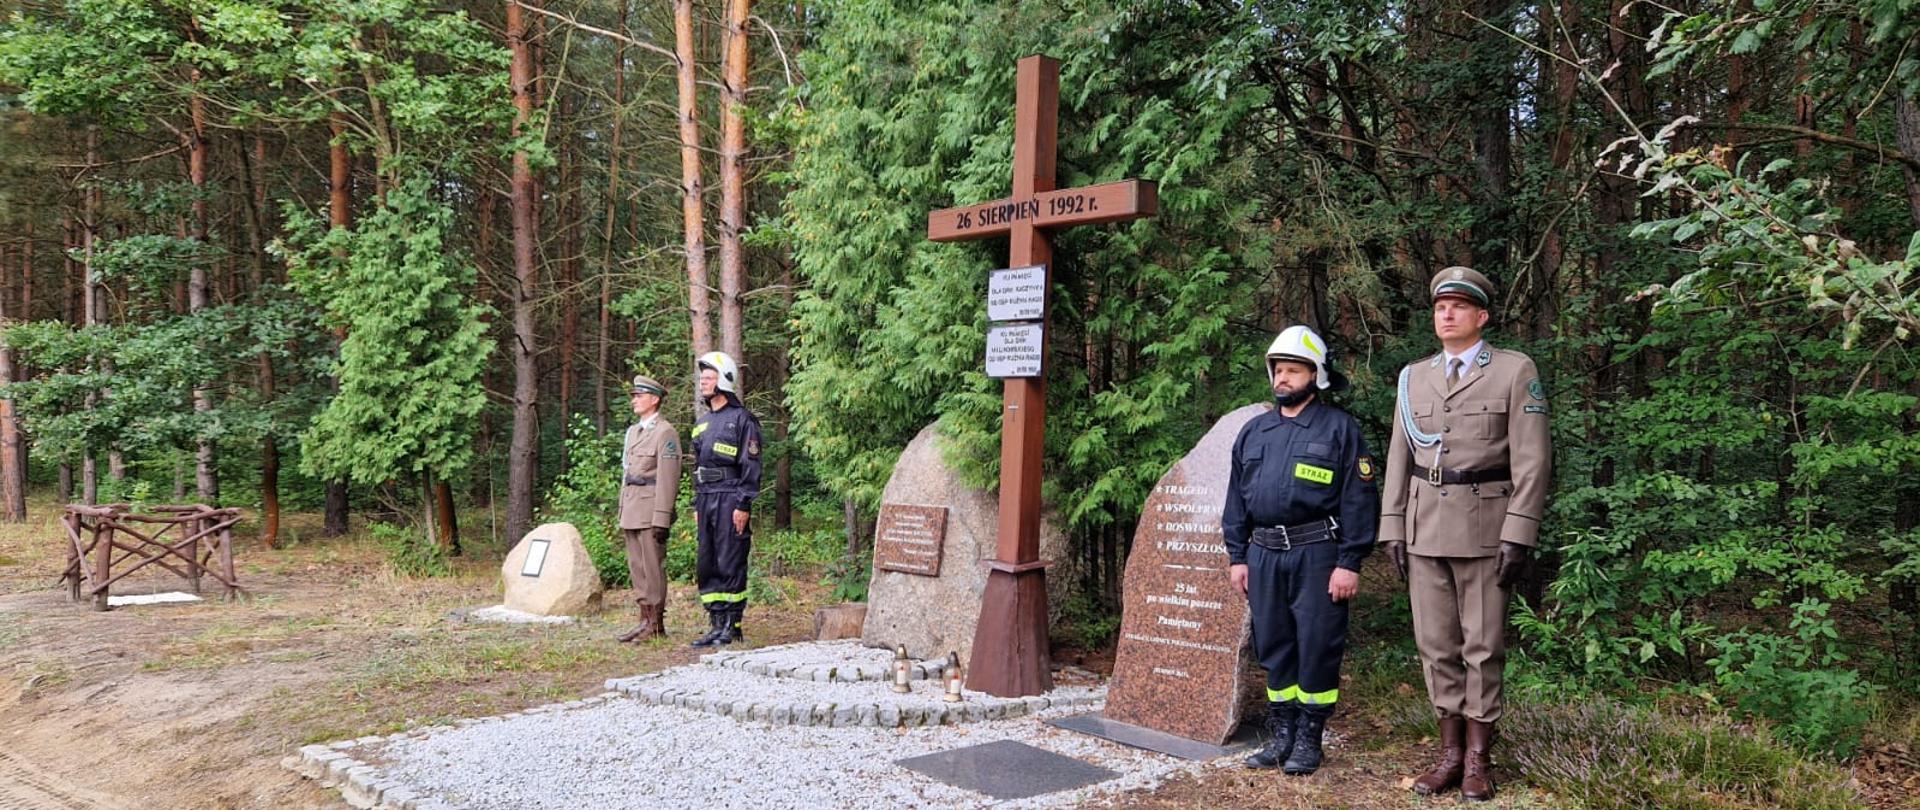 Na polanie w lesie, symboliczny krzyż upamietniajcy pożar lasu w Kużni Raciborskiej, obok niego warty druhów ochotniczej straży pożarnej i leśników.